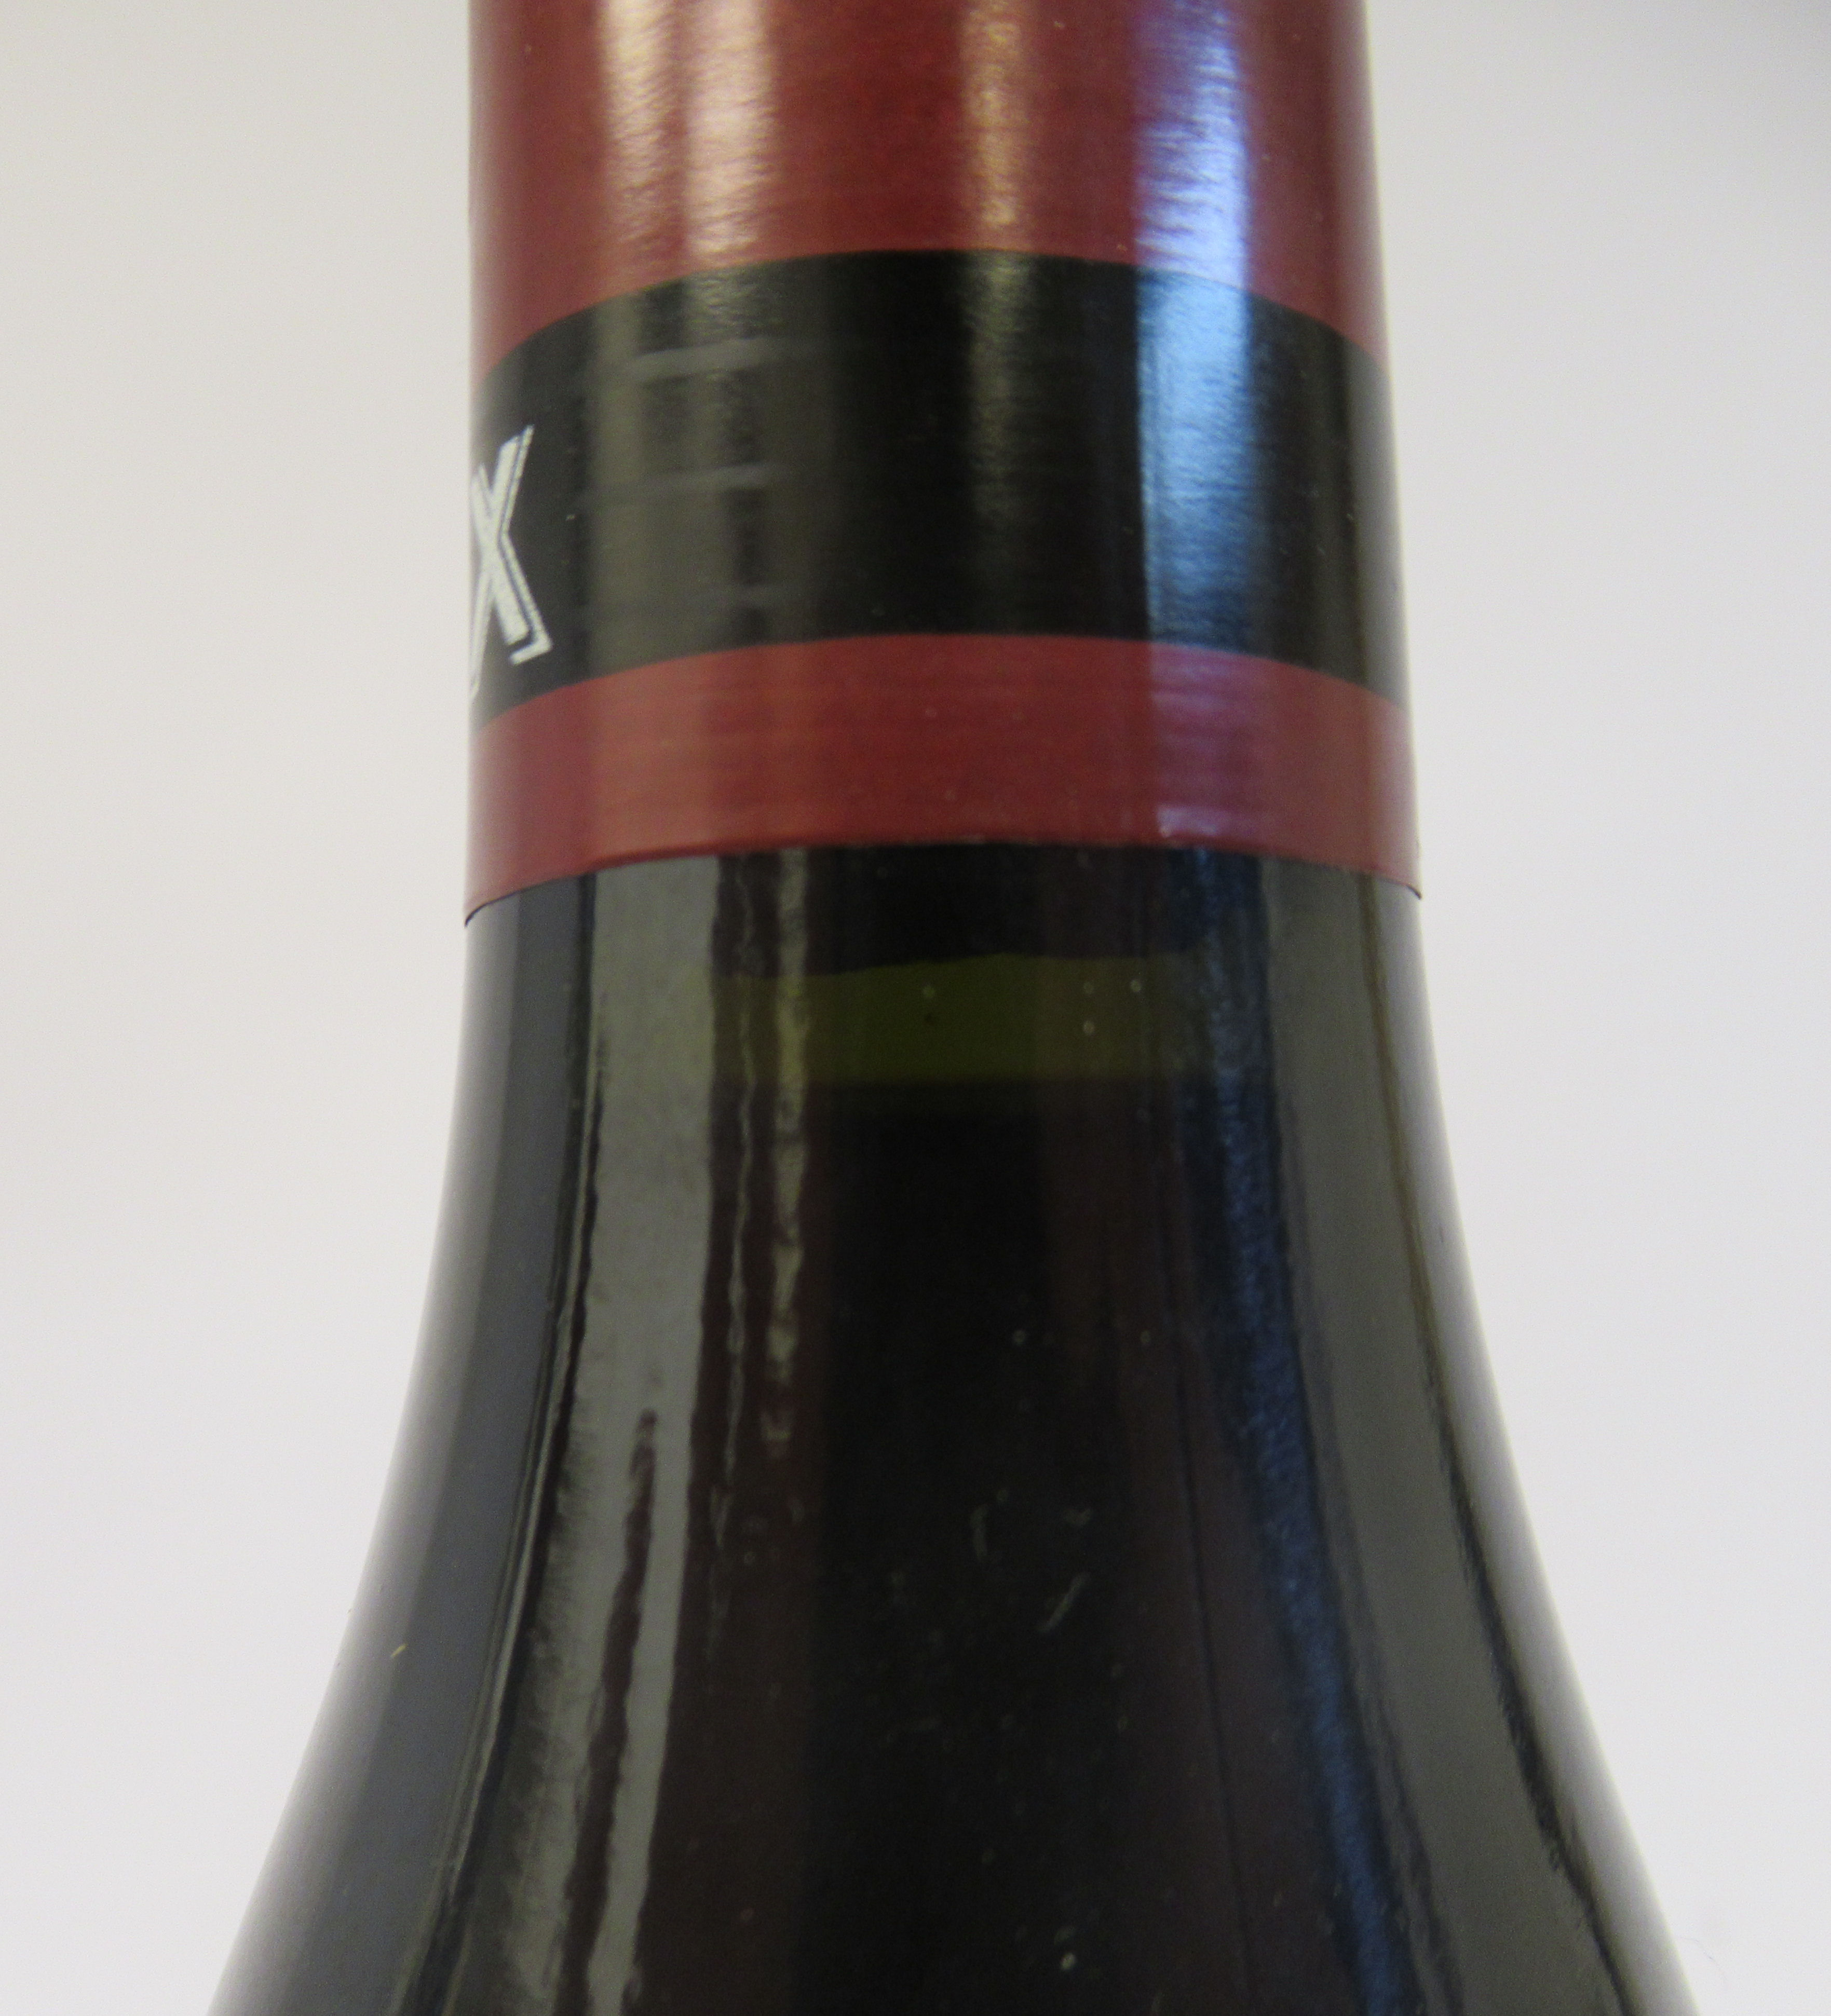 Wine, a bottle of 1996 Echezeaux Domaine De La Romanee-Conti (bottle number 05579) - Image 2 of 3